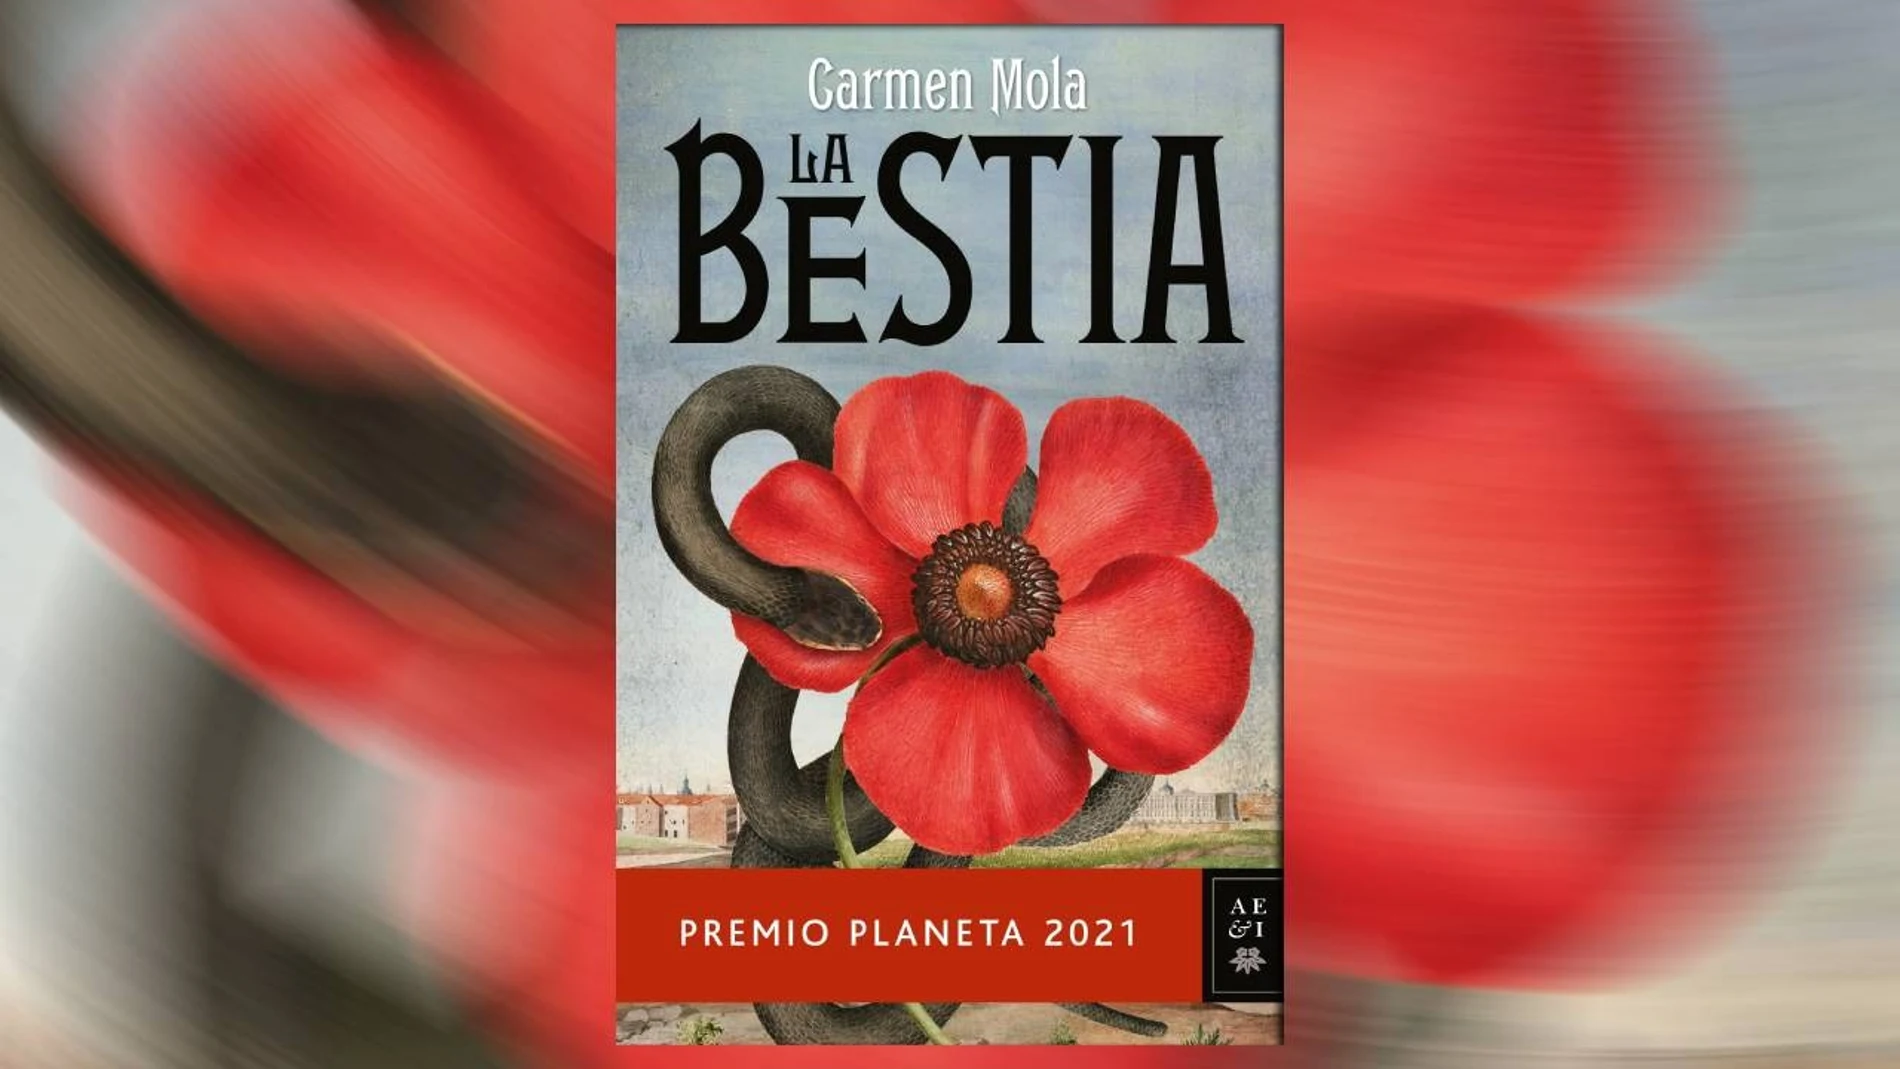 La Bestia': Lee en EXCLUSIVA el primer capítulo del libro de Carmen Mola,  Premio Planeta 2021